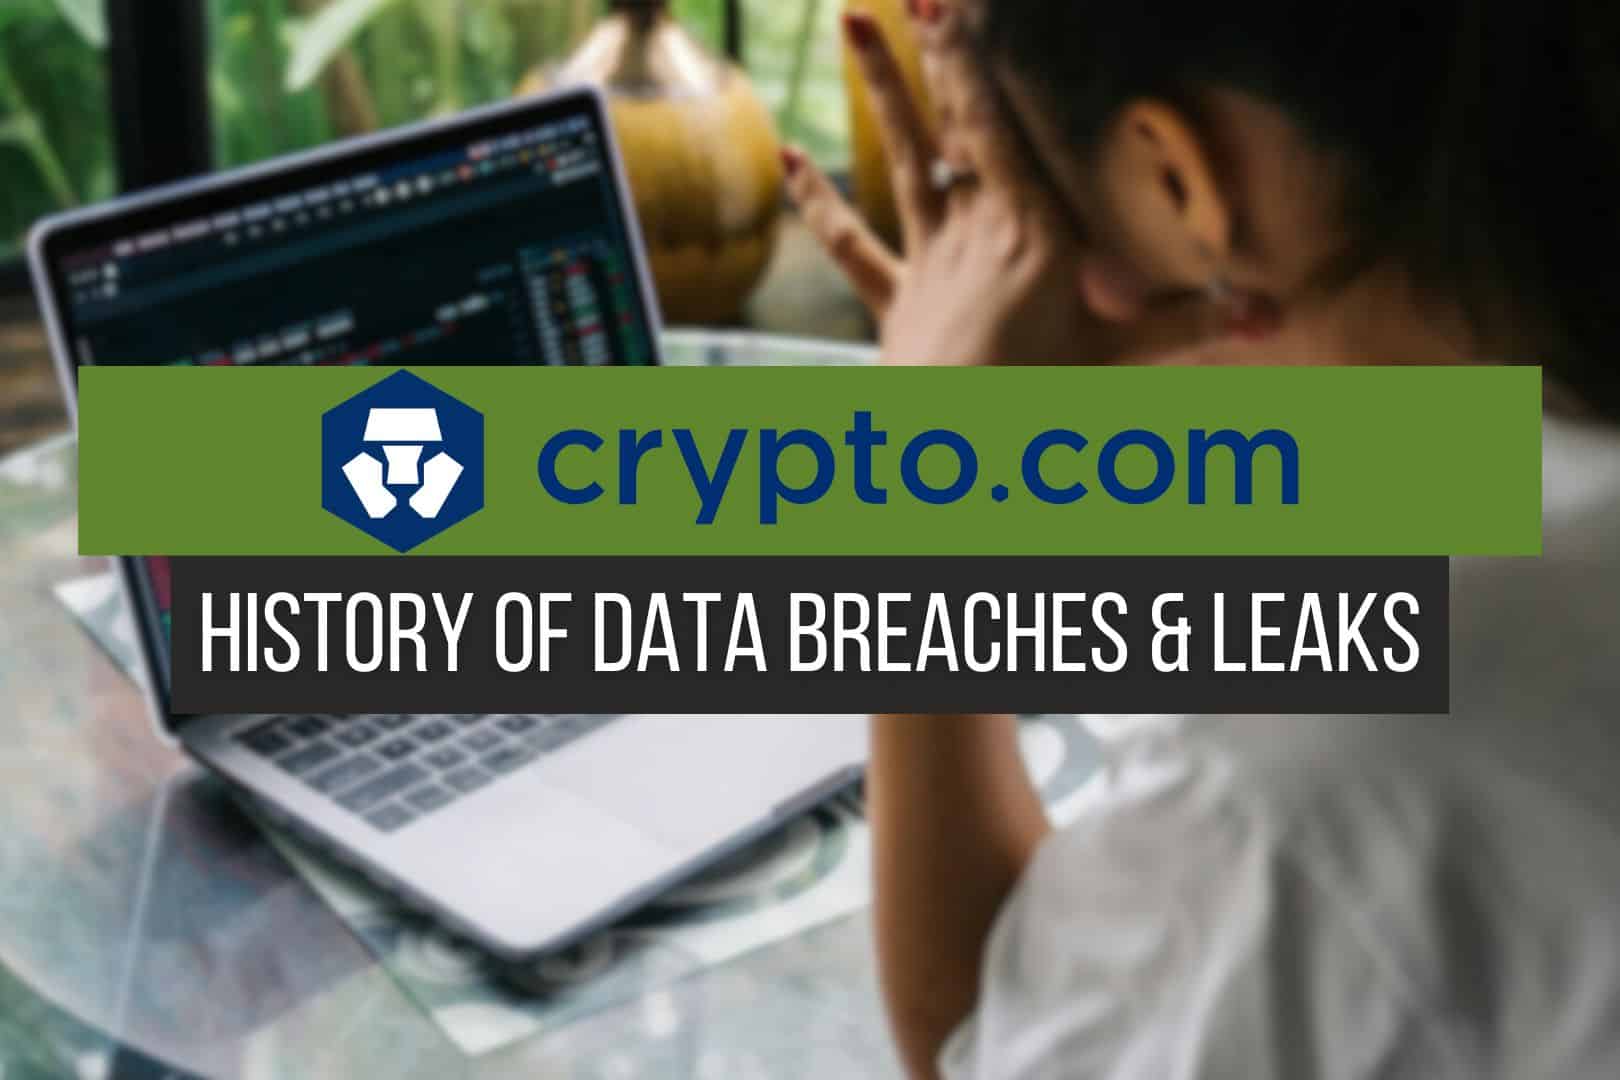 Crypto.com Data Breaches